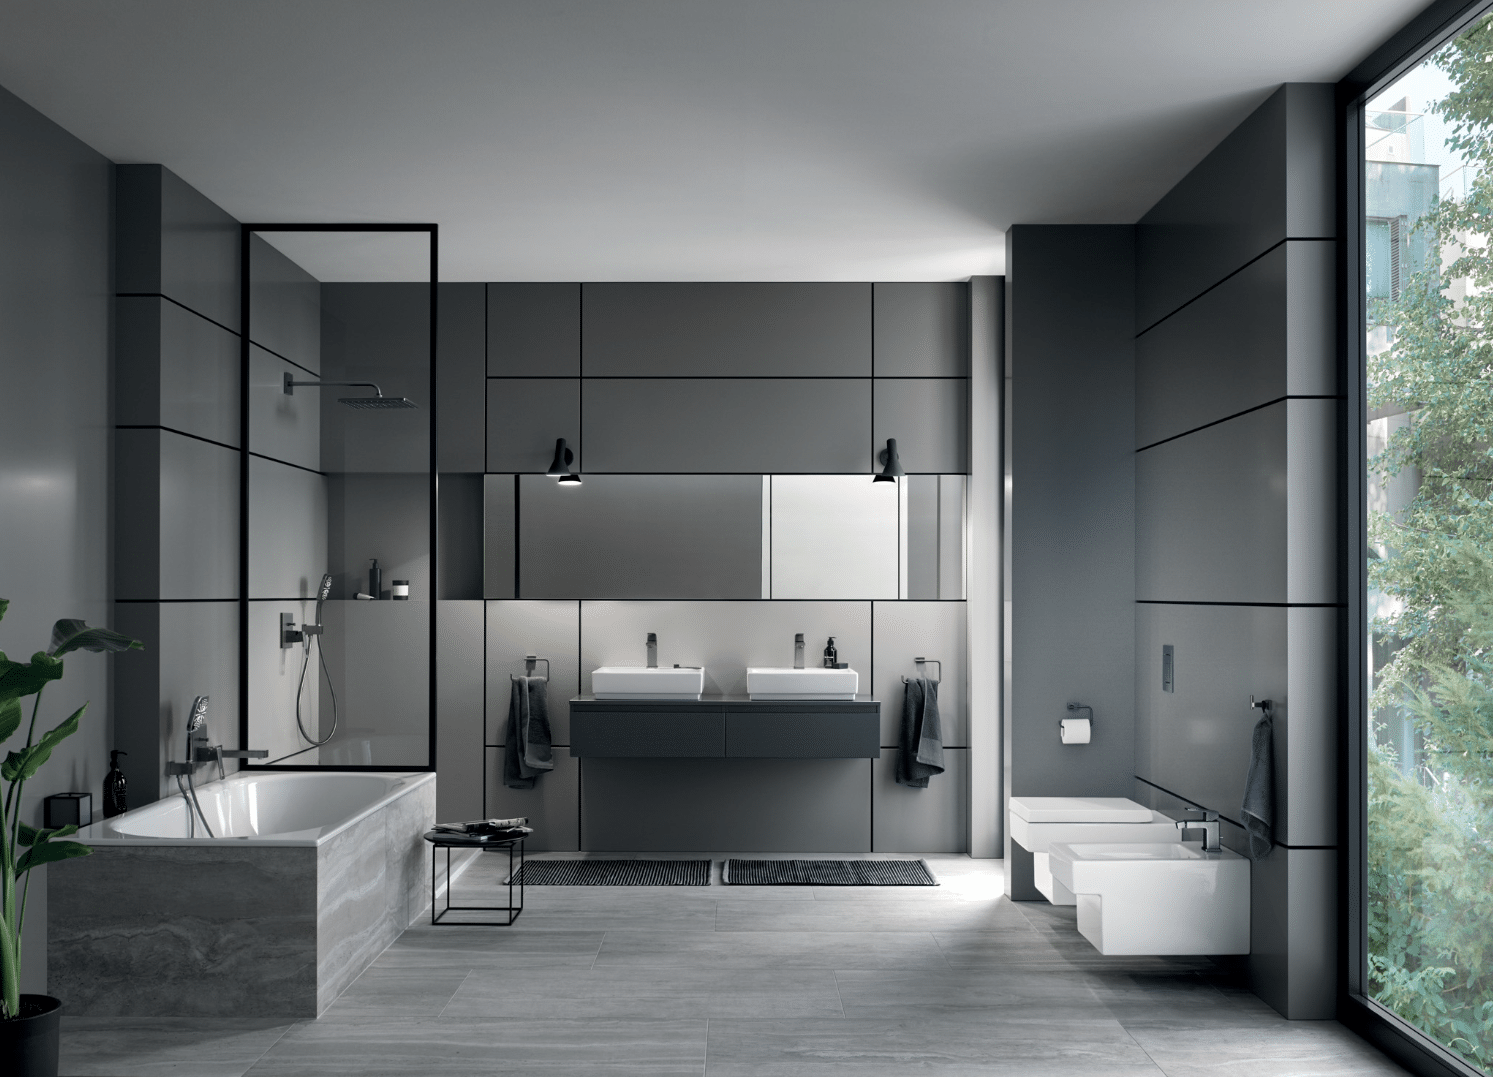 Grohe zeigt ein dunkelgraues Badezimmer mit Badewanne, Doppelwaschbecken, Toilette und einer großen Fensterfläche.